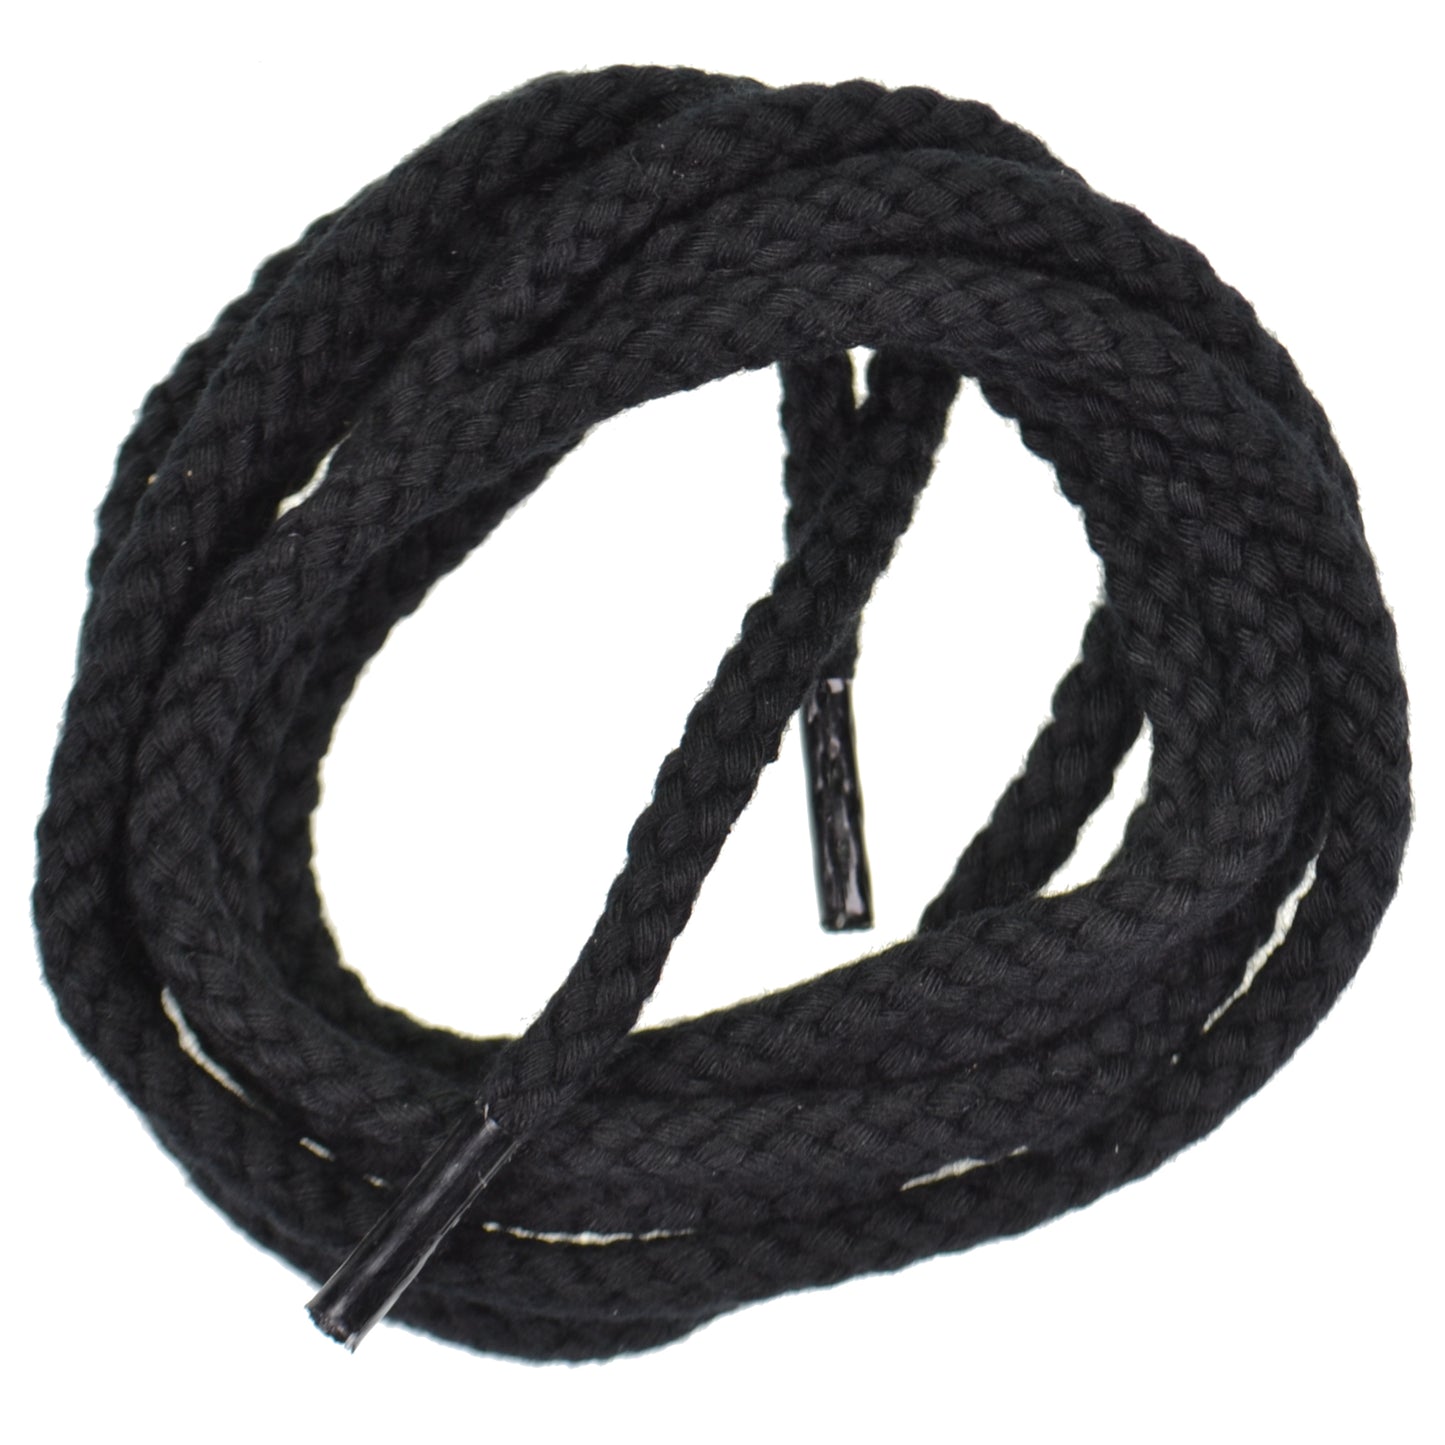 140cm Heavy Cord Shoe Laces - Black